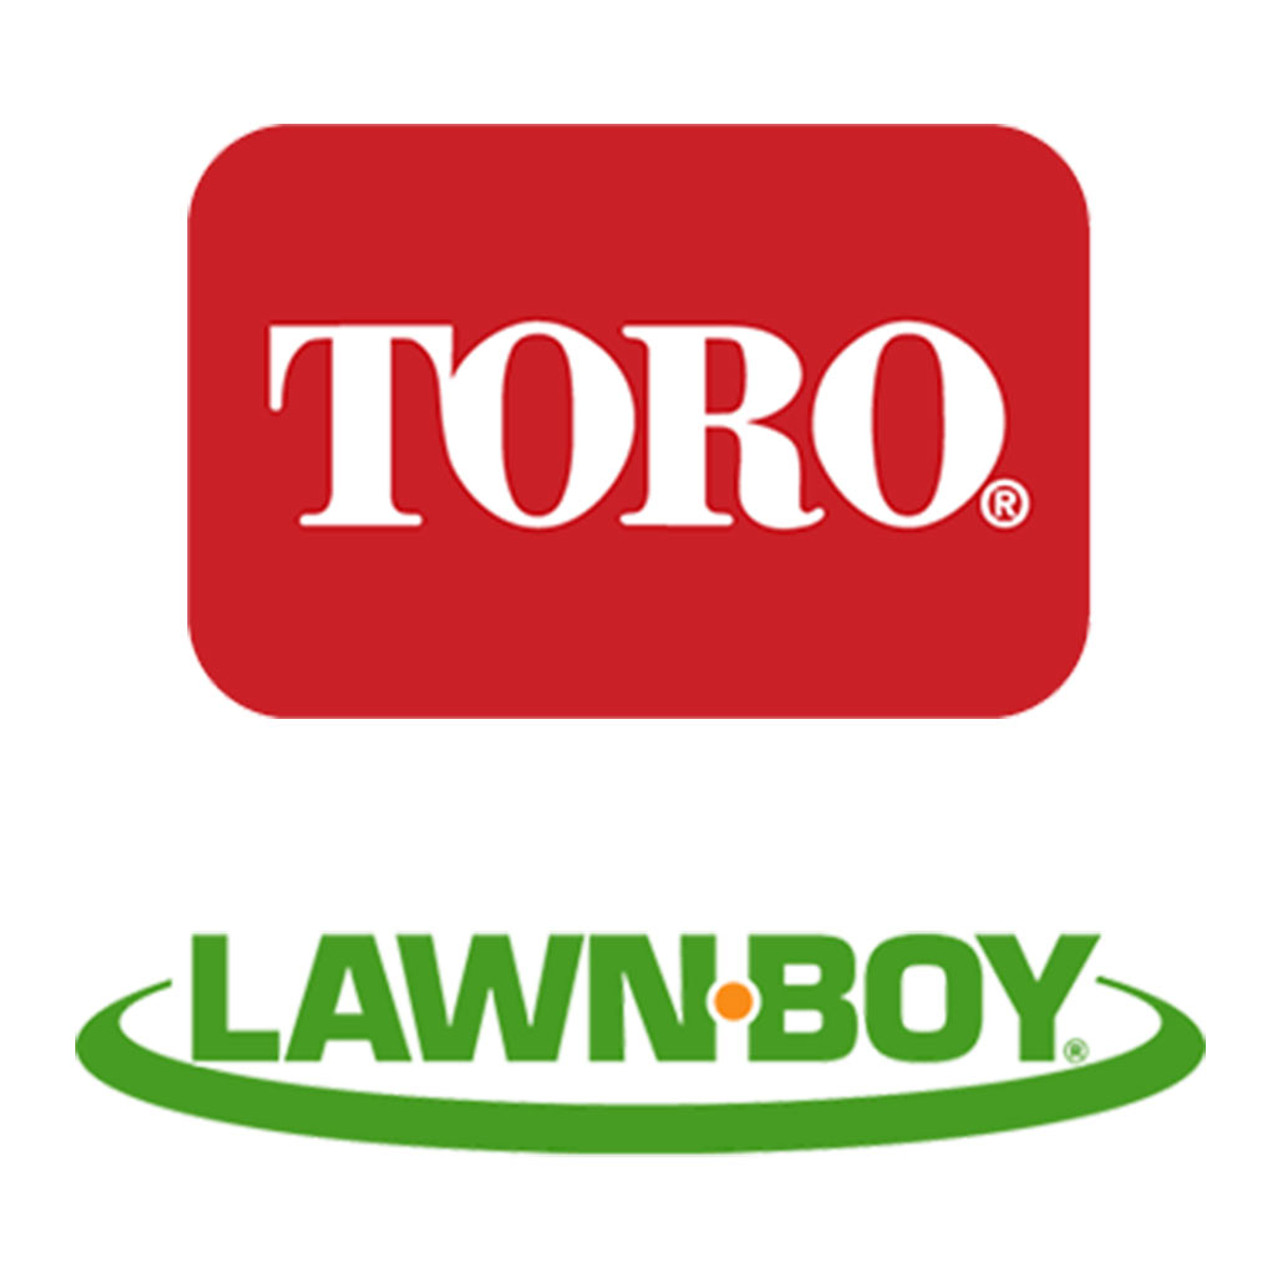 Toro Lawn-Boy 237-100 Grommet